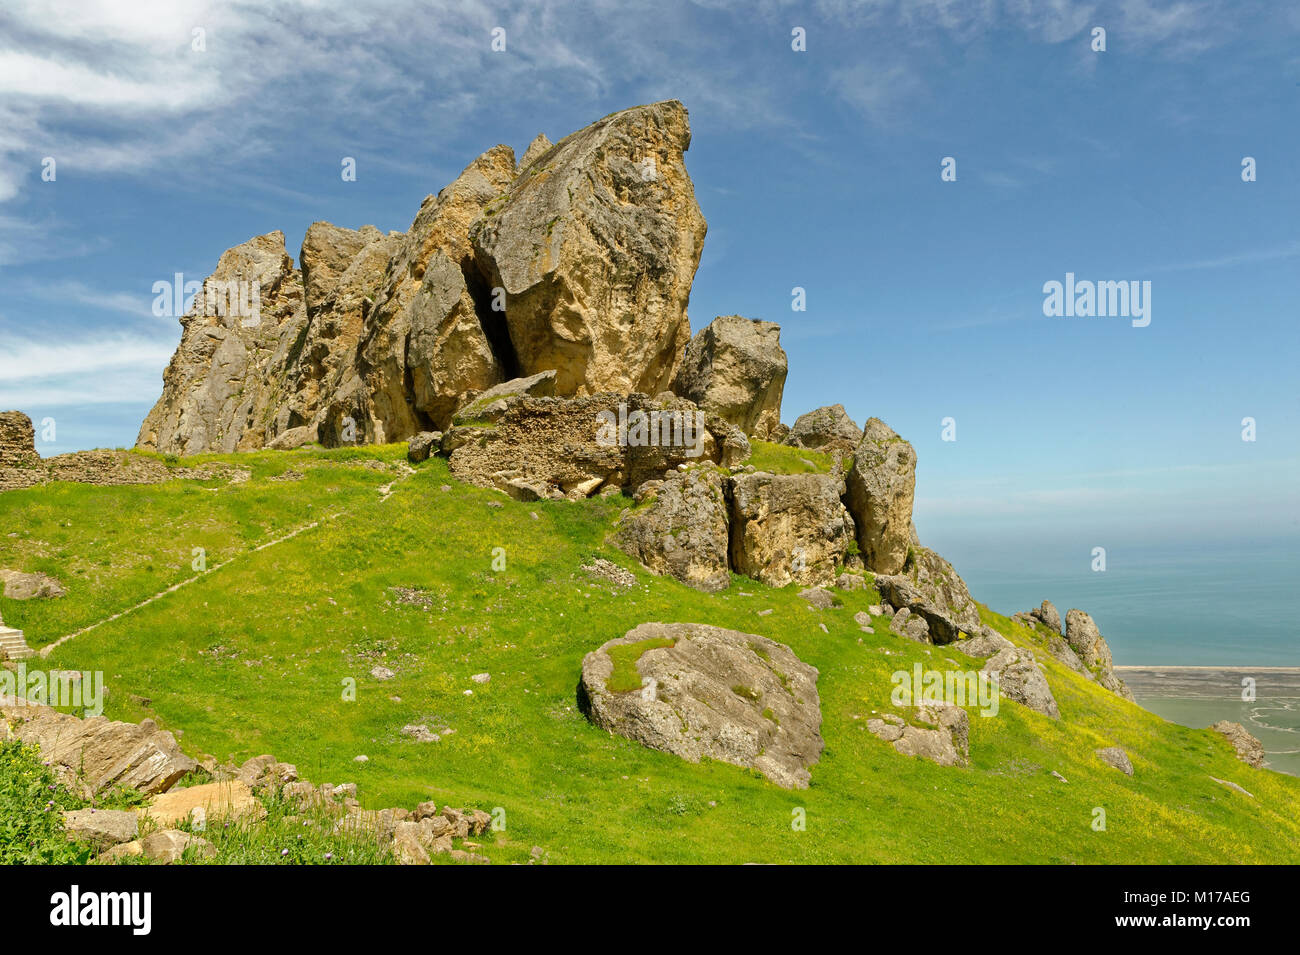 Besh Barmag ou cinq doigts Mountain, près de Bakou, en Azerbaïdjan. Banque D'Images